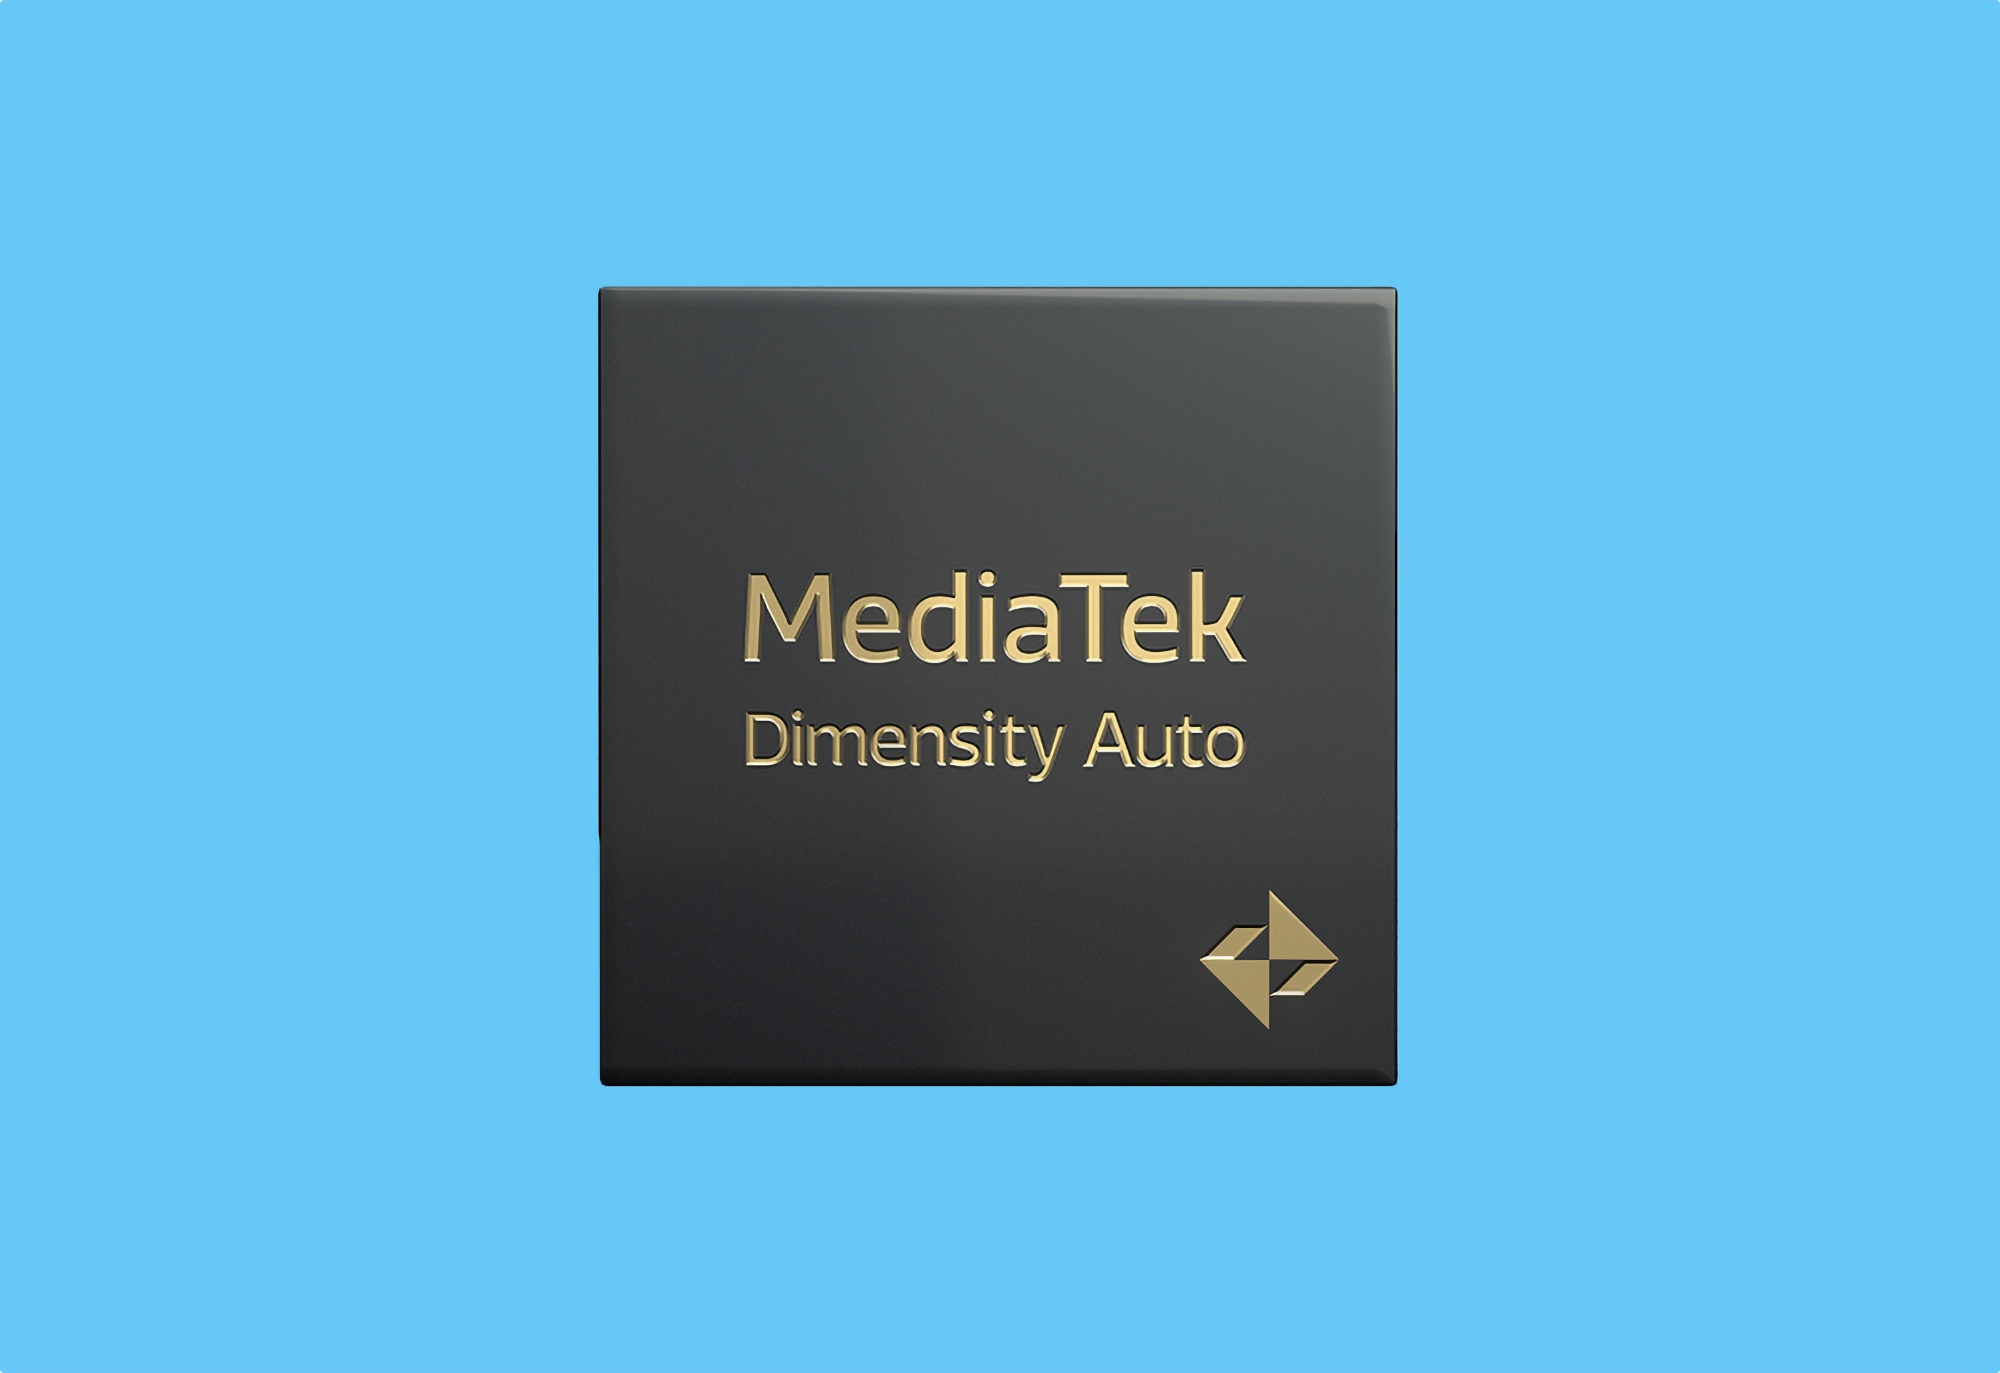 MediaTek dévoile le Dimensity Auto : un processeur pour les voitures équipées de la 5G, du Wi-Fi 7, d'écrans à 120 Hz et de systèmes de navigation globale par satellite.